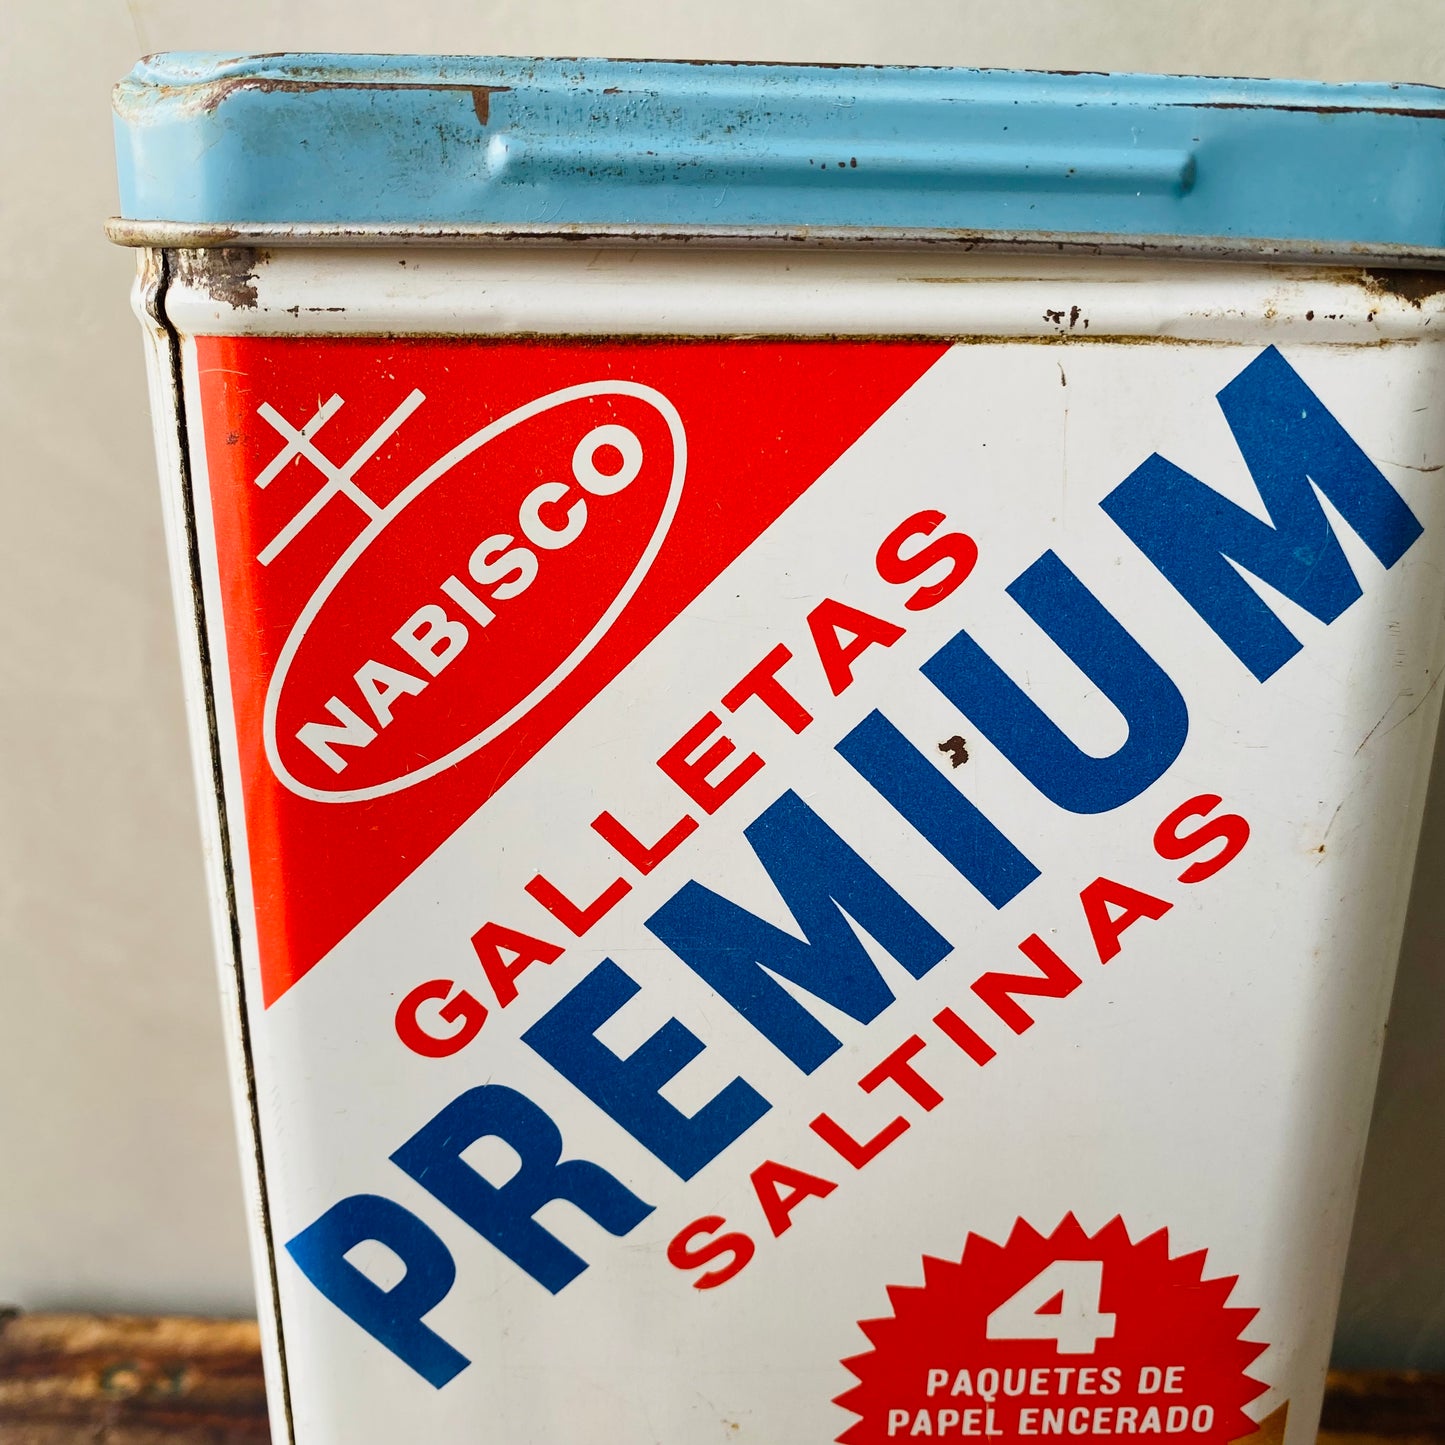 【1969 USA vintage】NABISCO PREMIUM SALTINAS TIN CAN